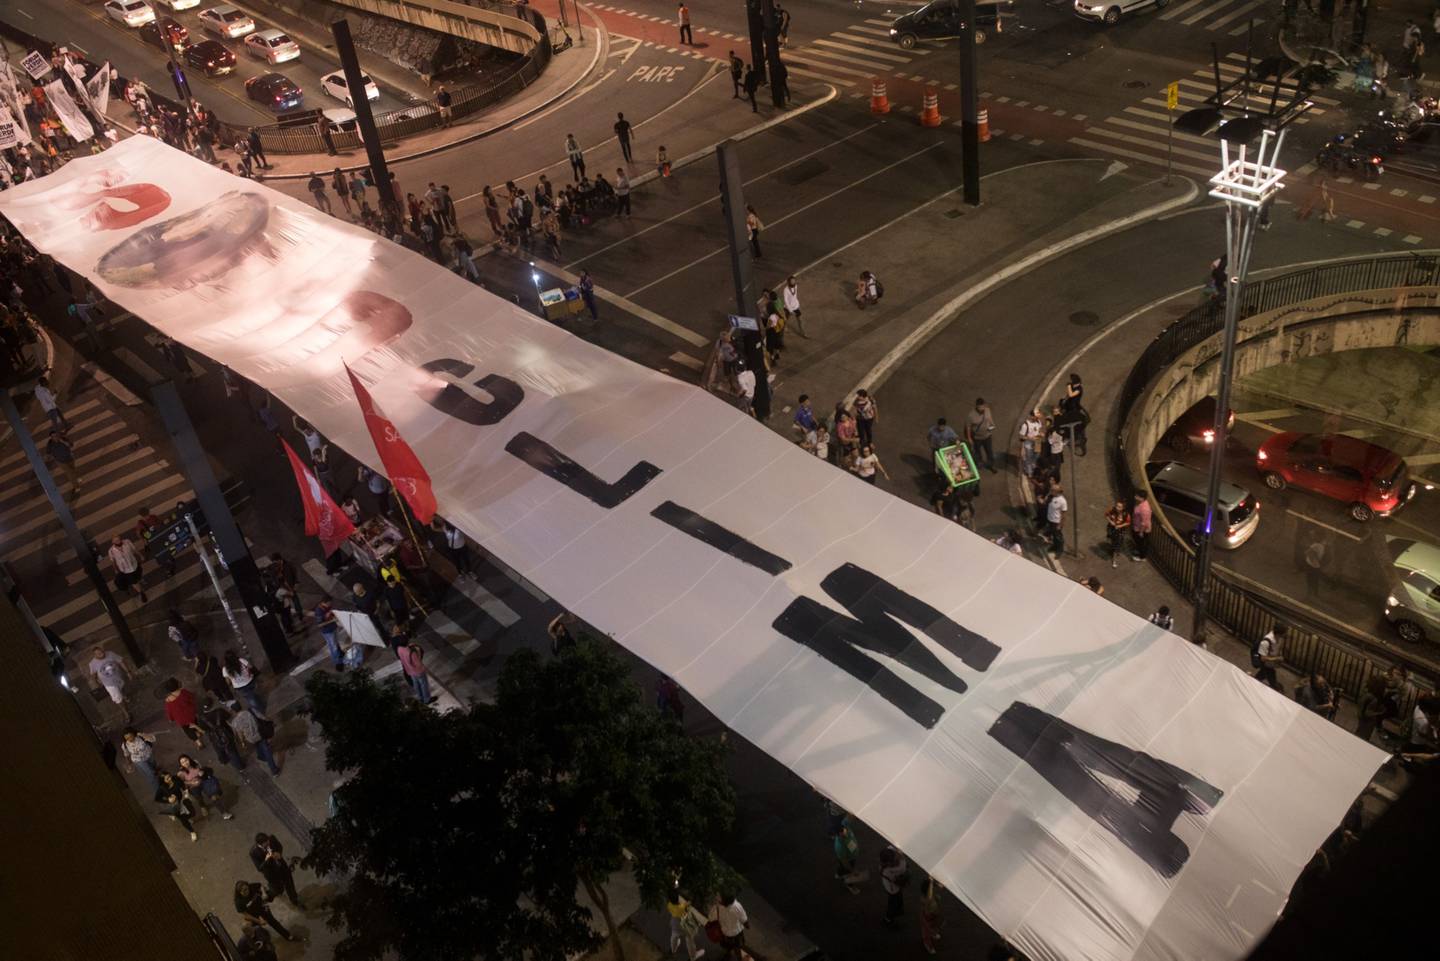 Manifestantes carregam faixa onde se lê "SOS Clima" em ato na avenida Paulista, em São Paulo, em 2019